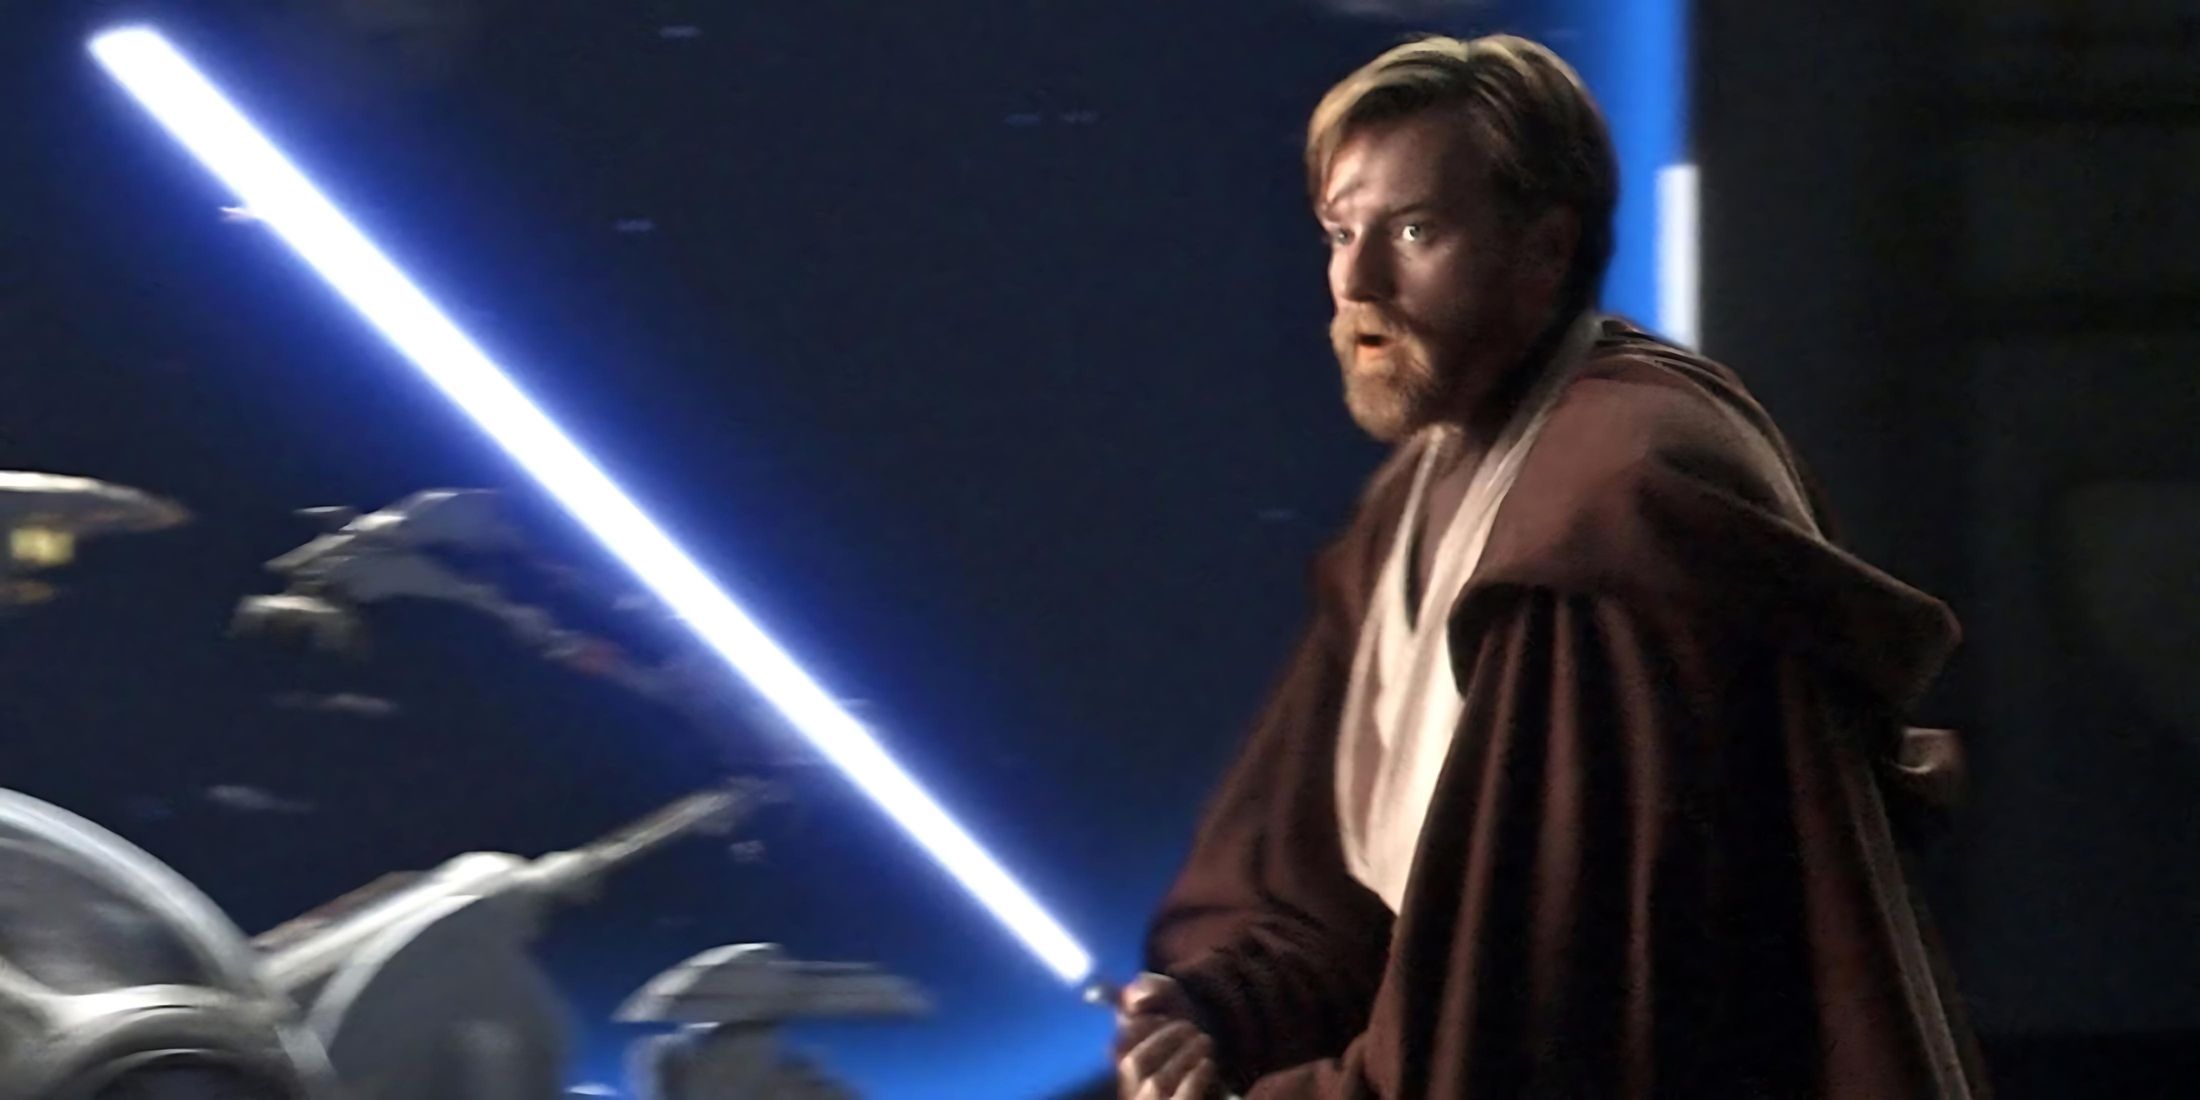 Obi Wan Kenobi with a blue lightsaber